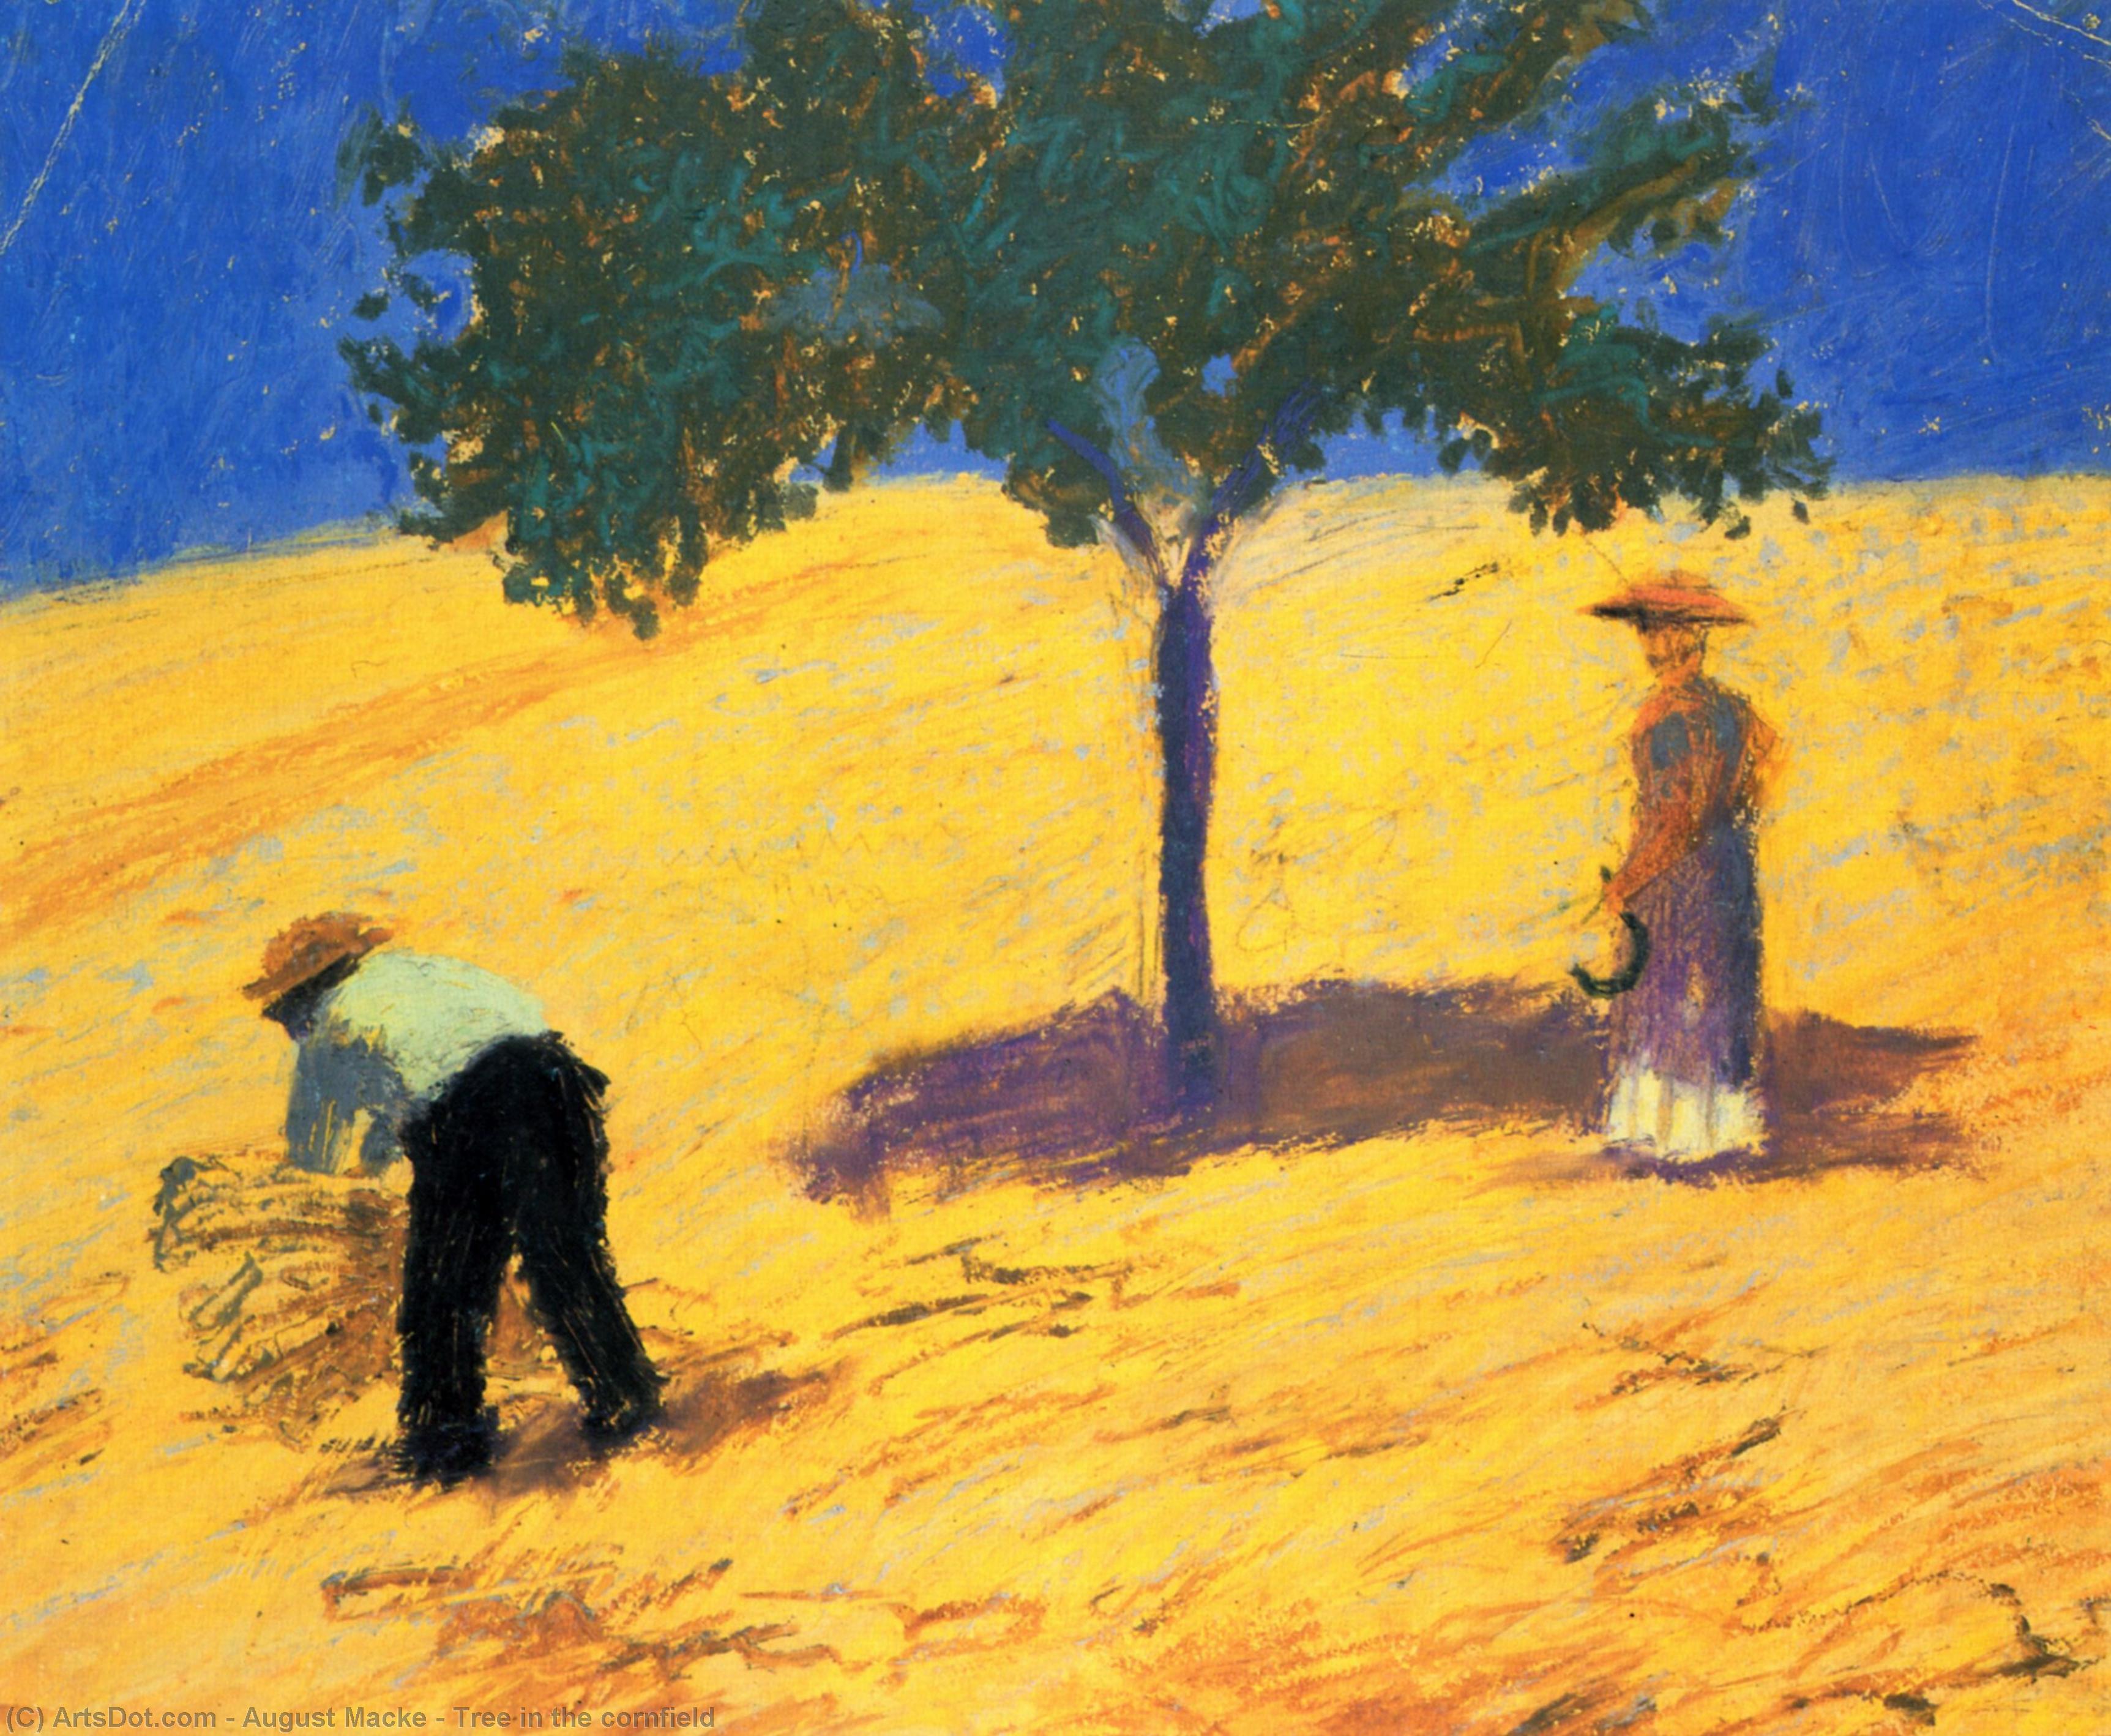 WikiOO.org - Encyclopedia of Fine Arts - Malba, Artwork August Macke - Tree in the cornfield